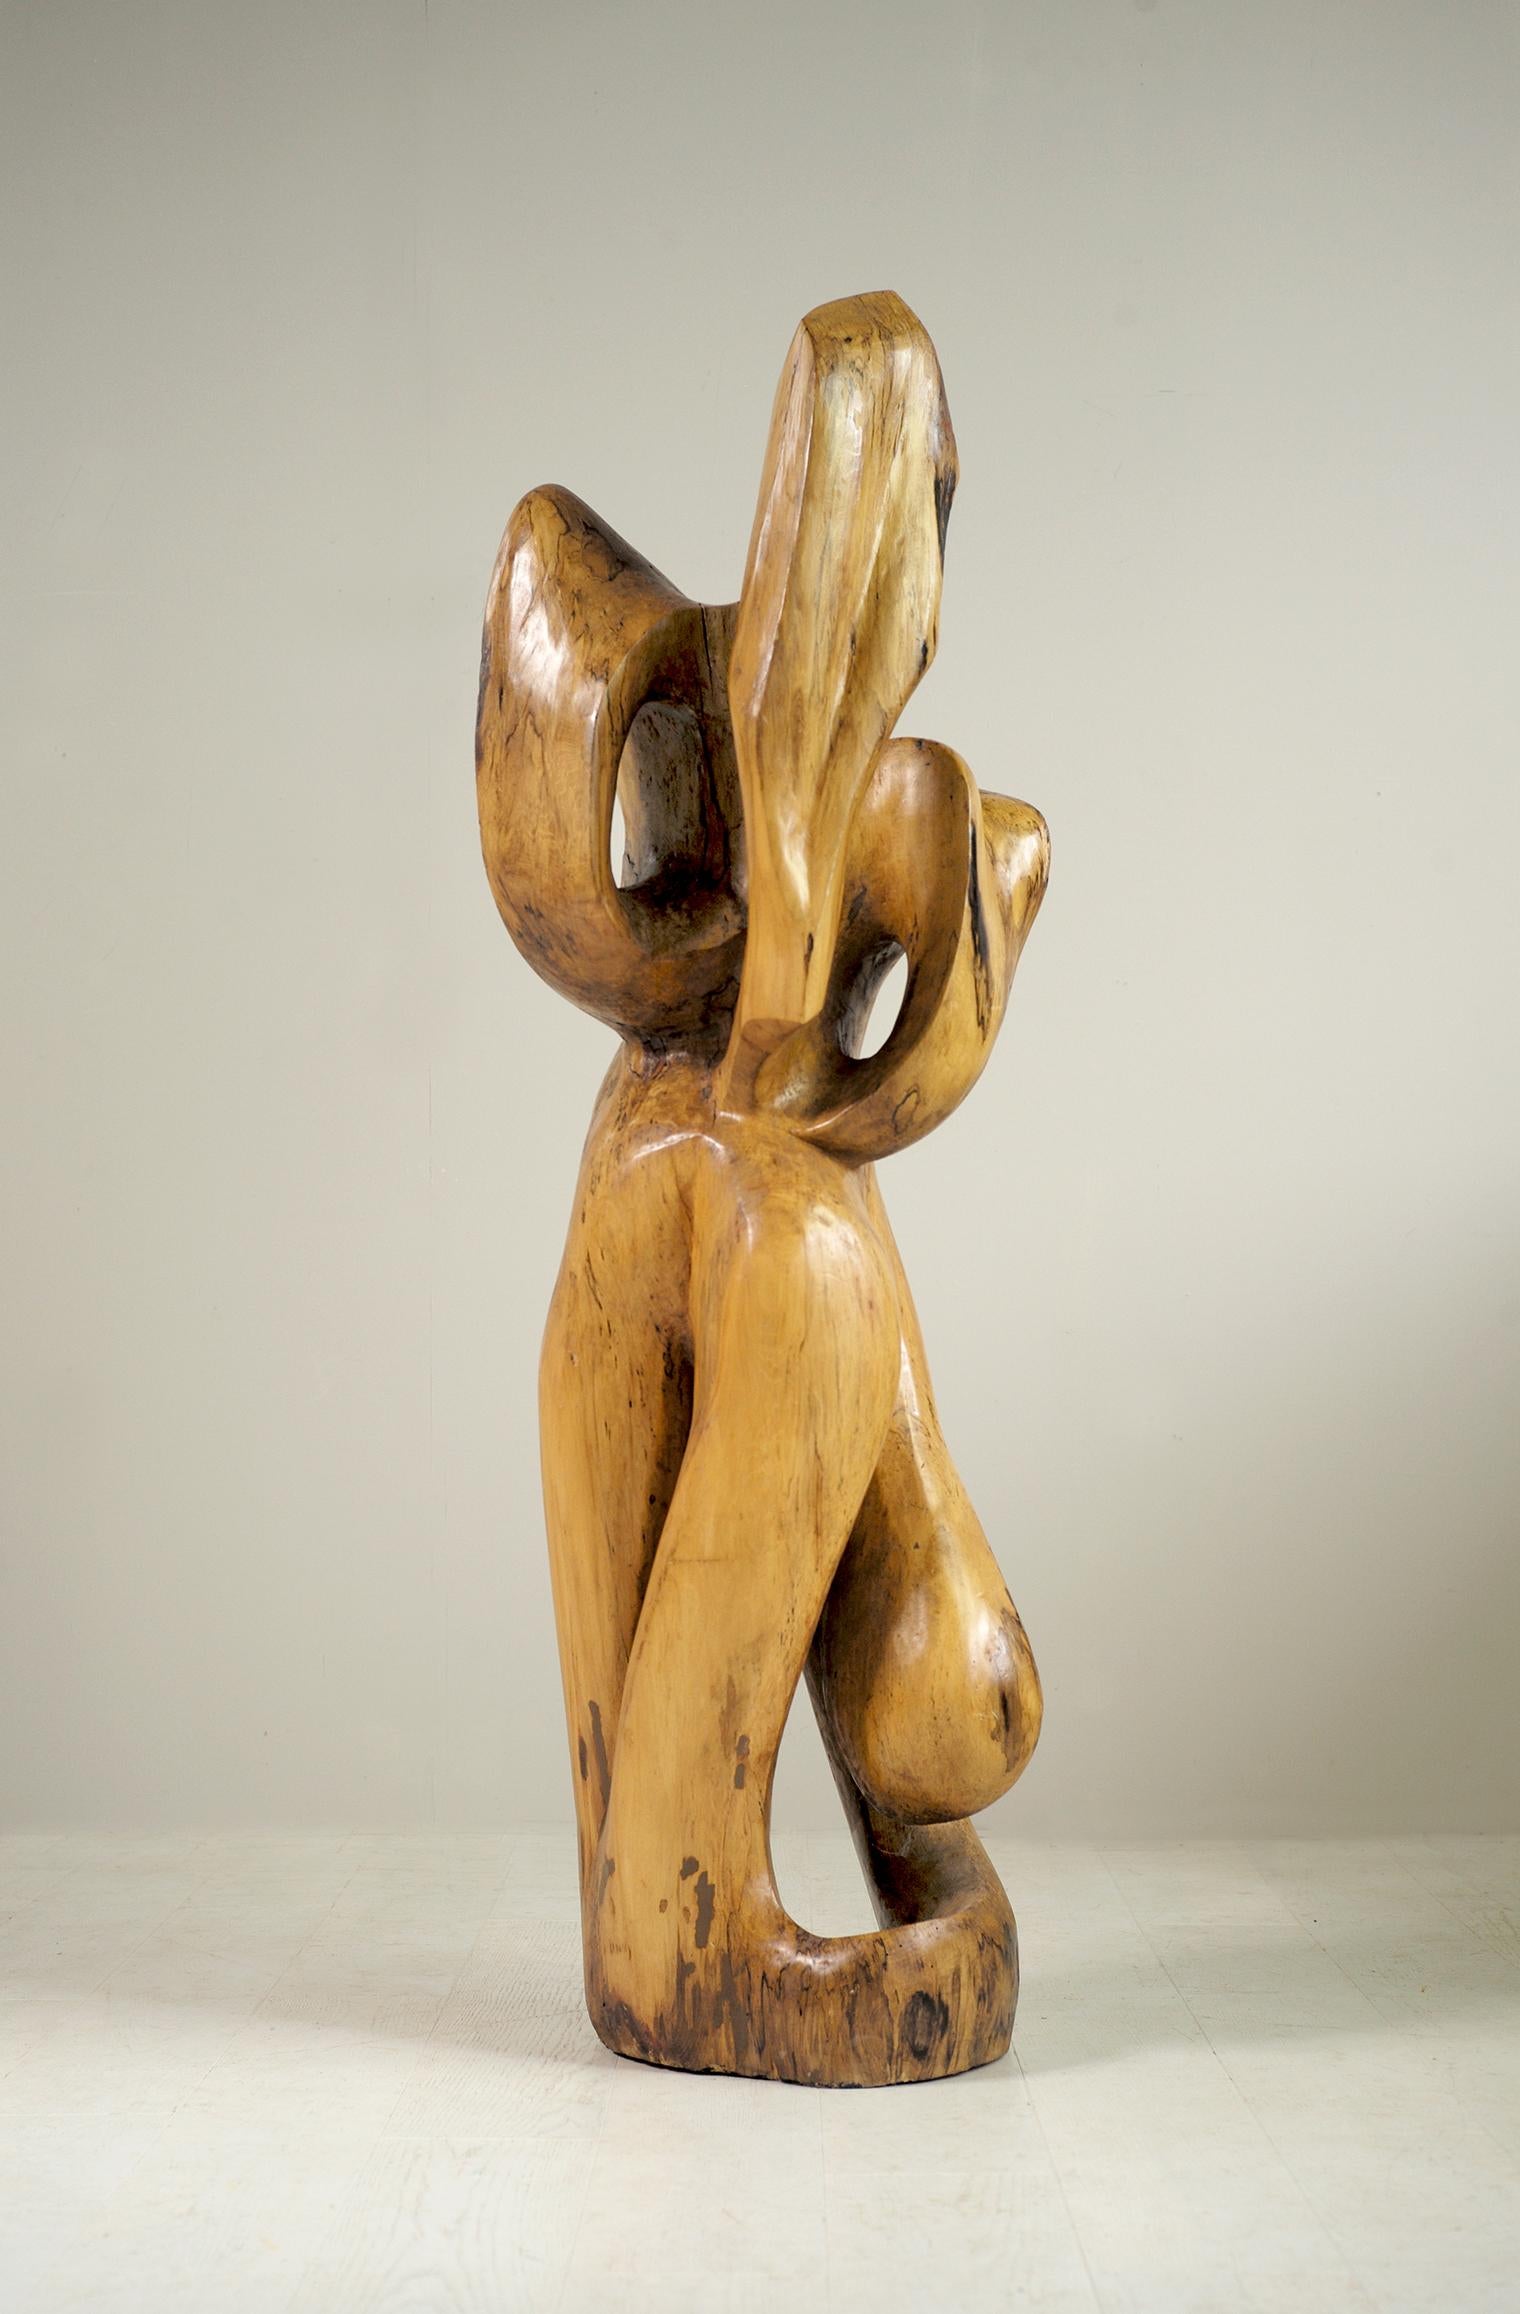 Bedeutende Monoxyl-Skulptur aus Bergahorn, die ein Paar darstellt, der Mann liegt auf dem Boden, die Frau steht auf.
Einzigartiges Stück, um 1960.
Maße: Höhe 160 cm.